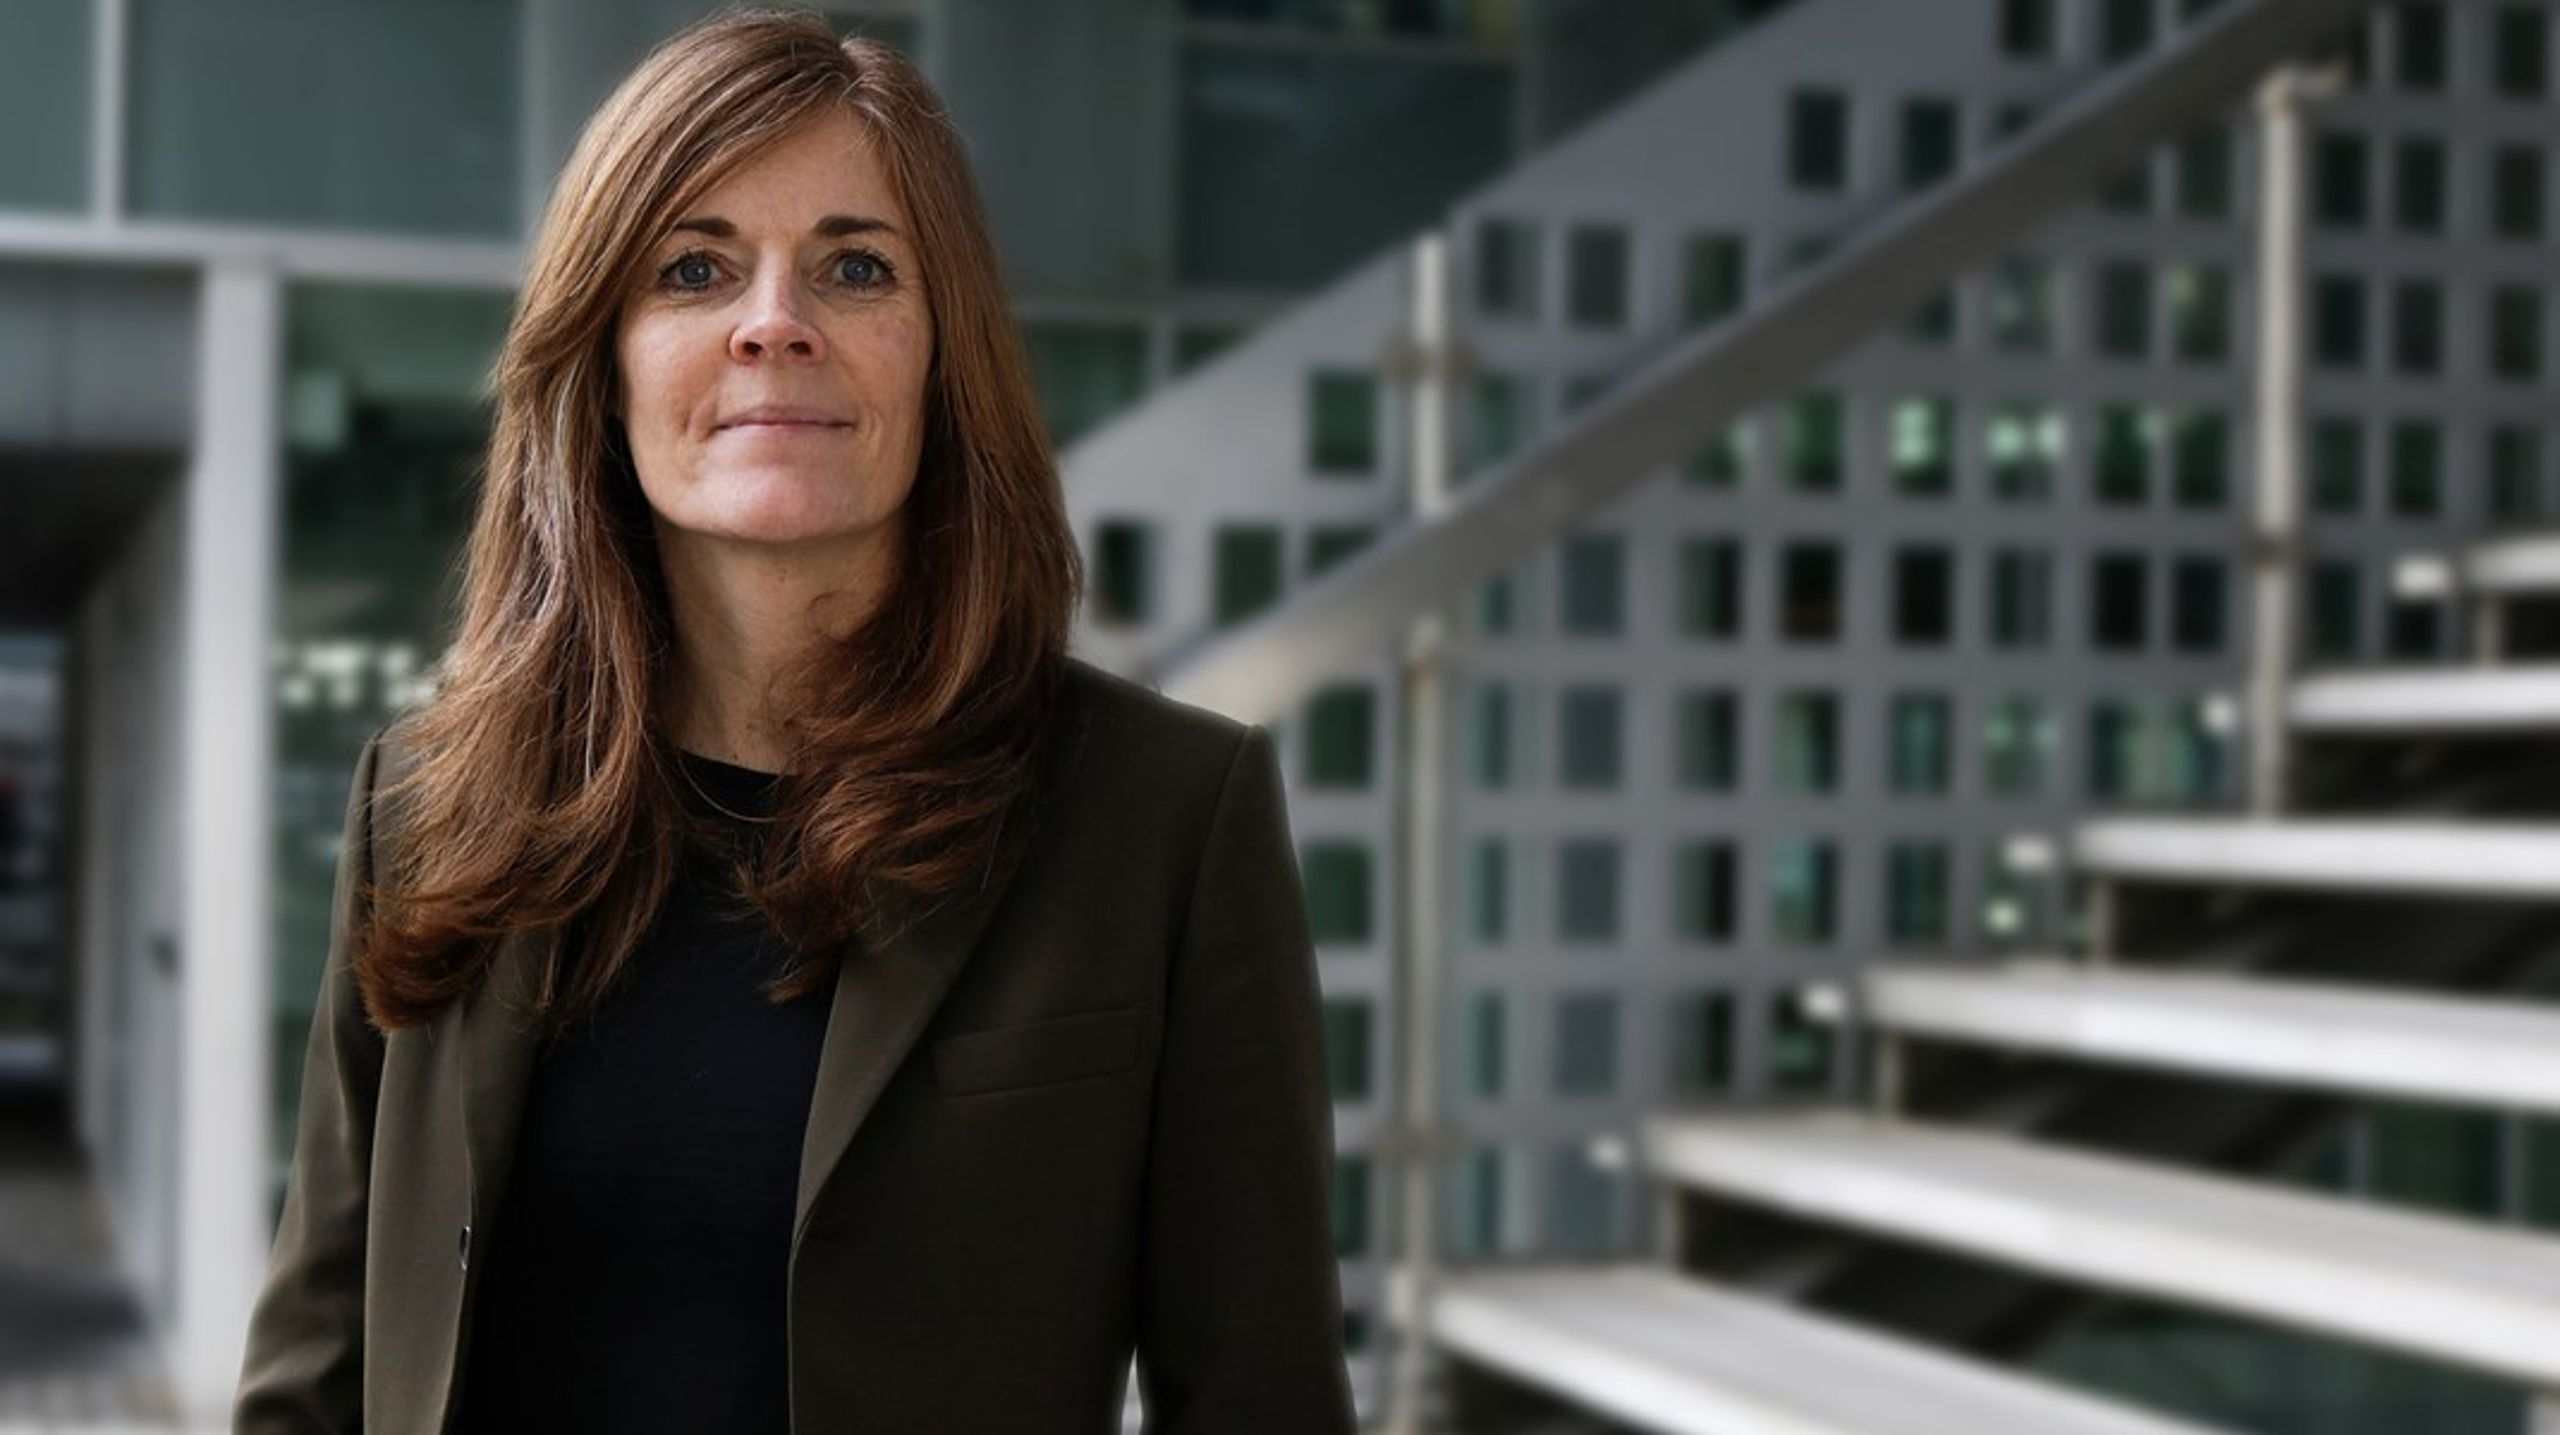 Elnetselskabet N1 har ansat Lise Søgård Bering som ny administrerende direktør, efter at have hentet hende internt til stillingen.